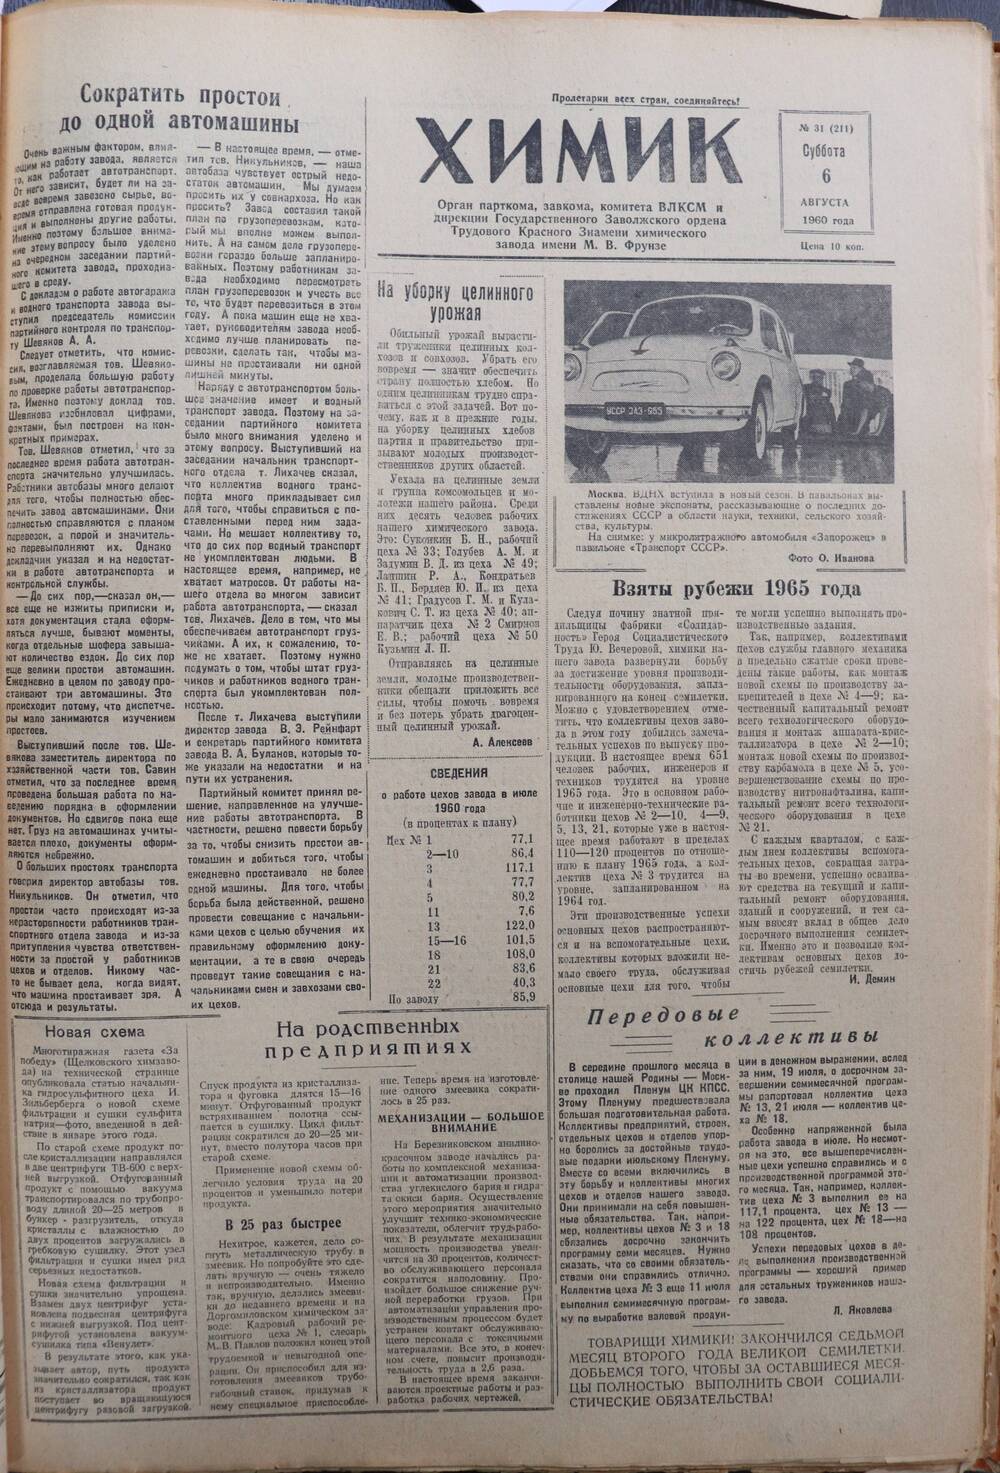 Газета «Химик» № 31 от 6 августа 1960 года.